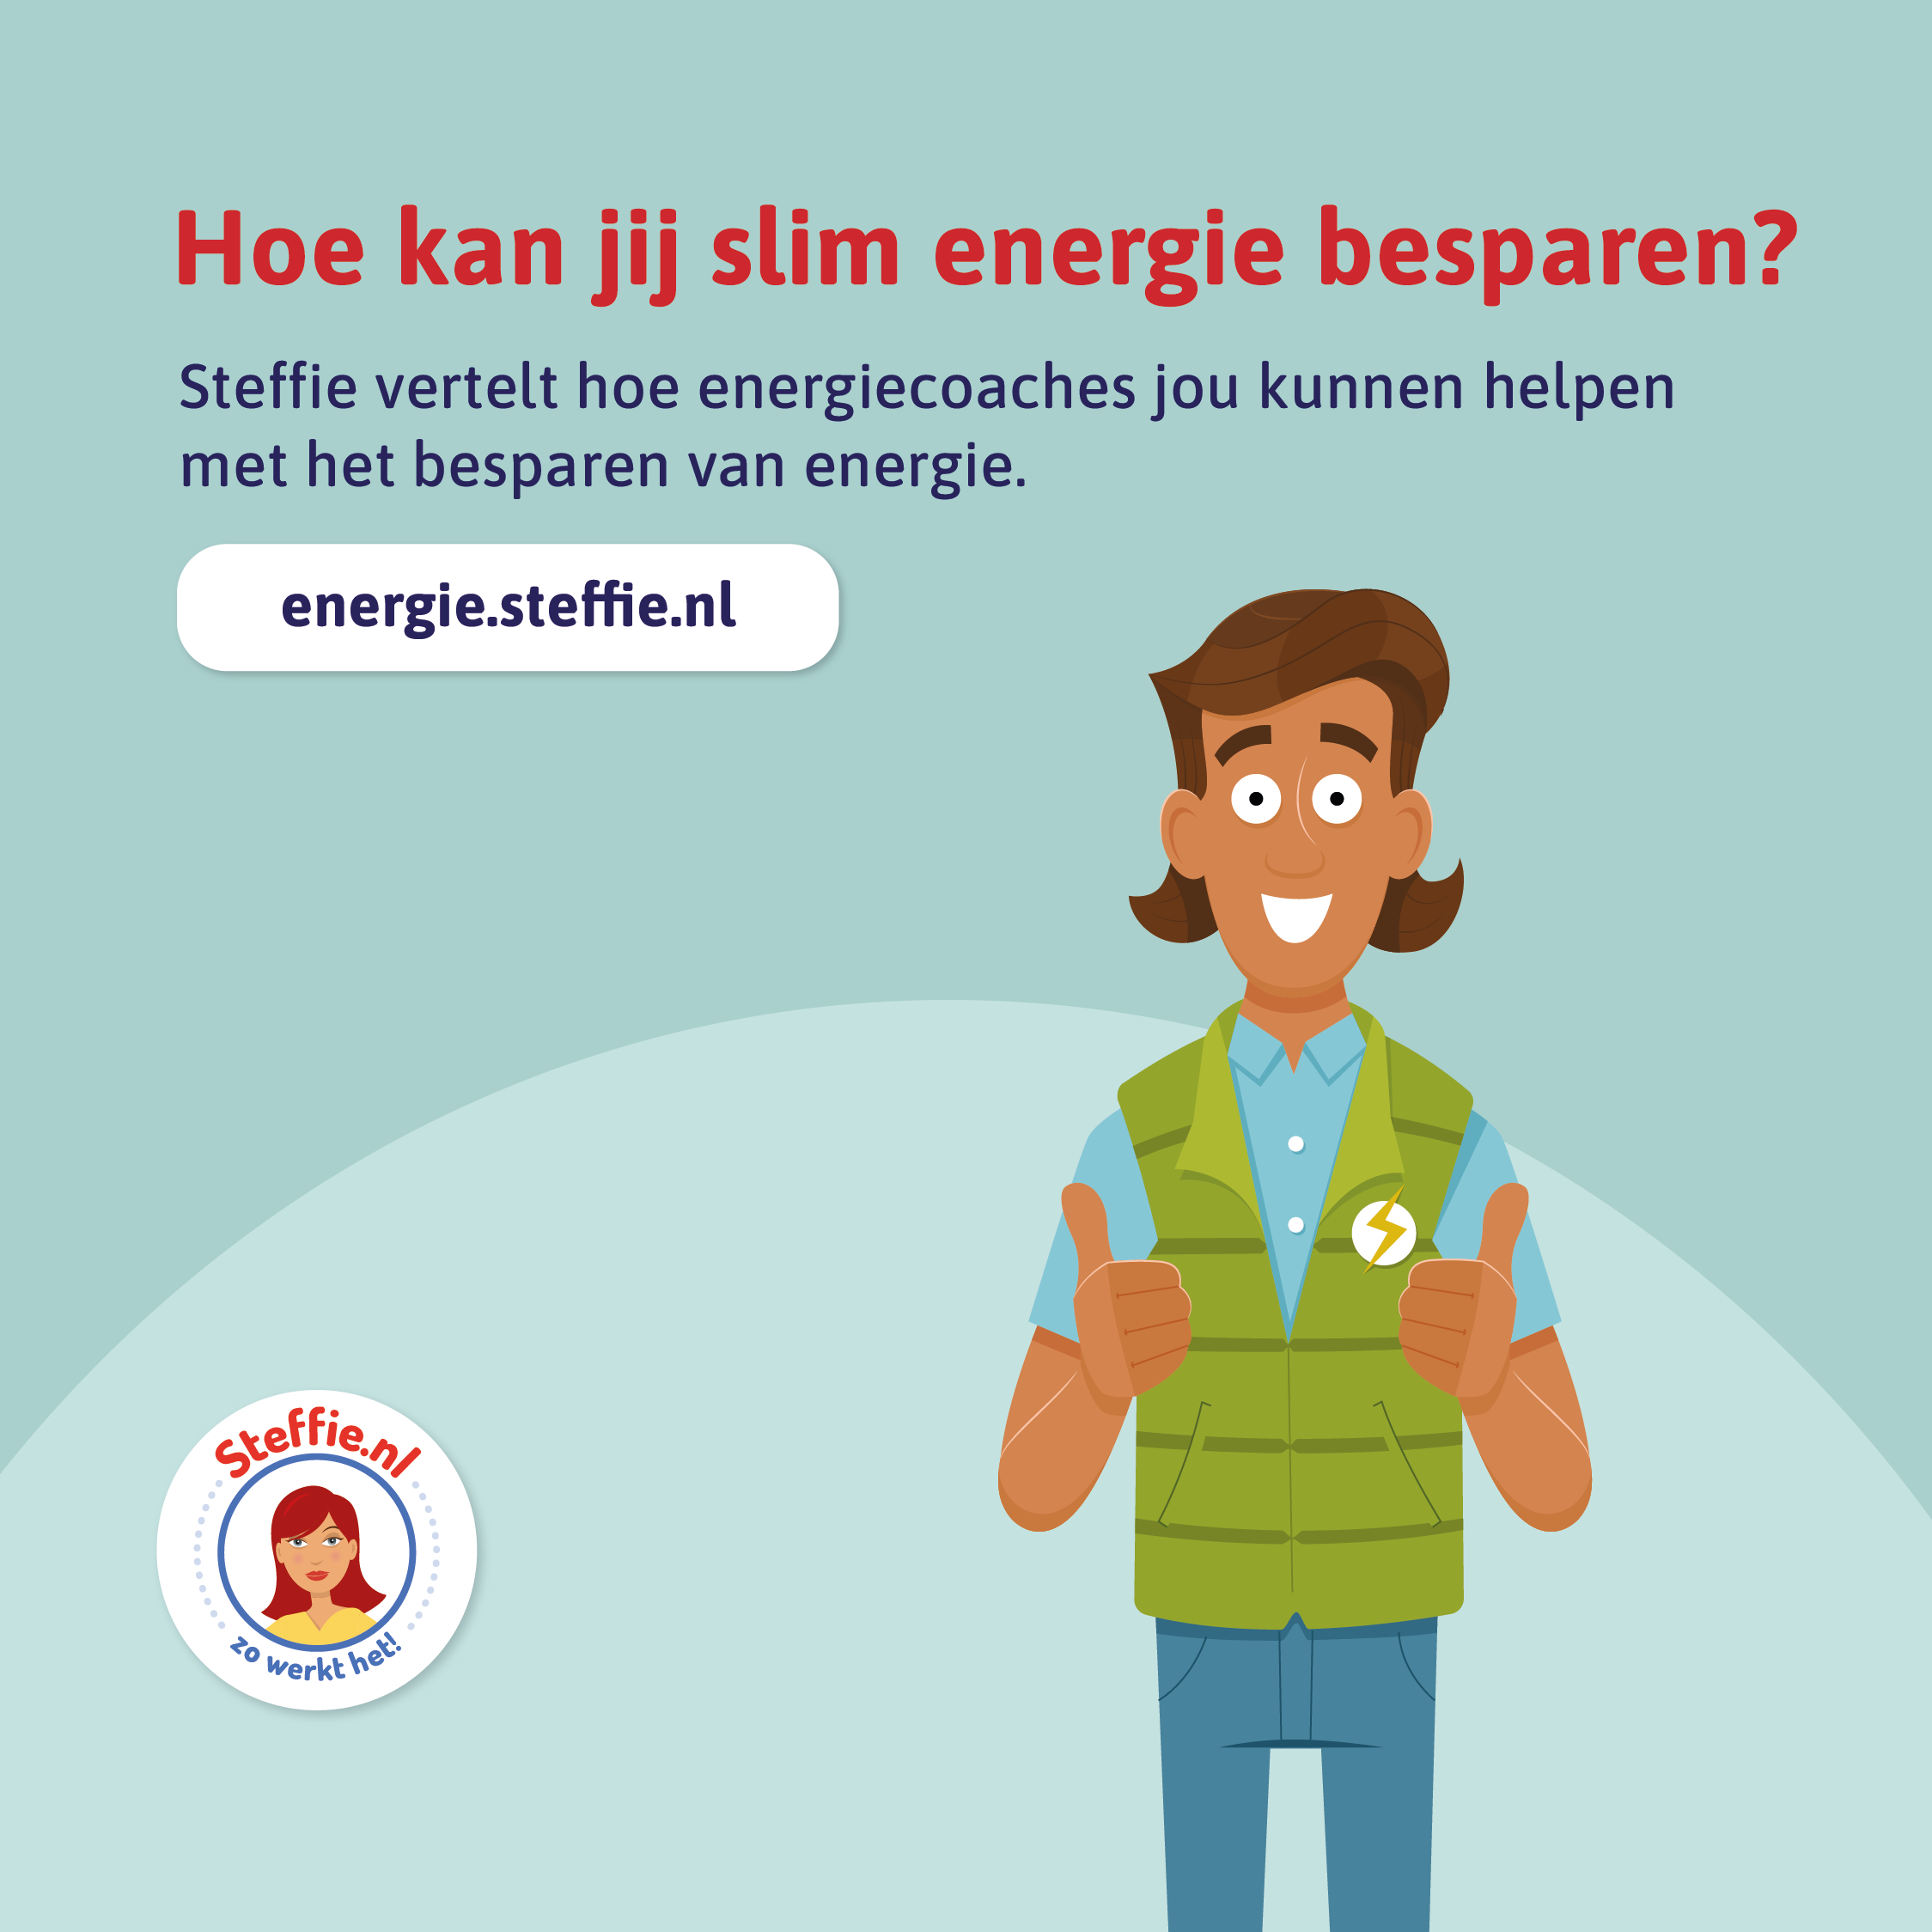 Met Steffie kan je veel energie besparen